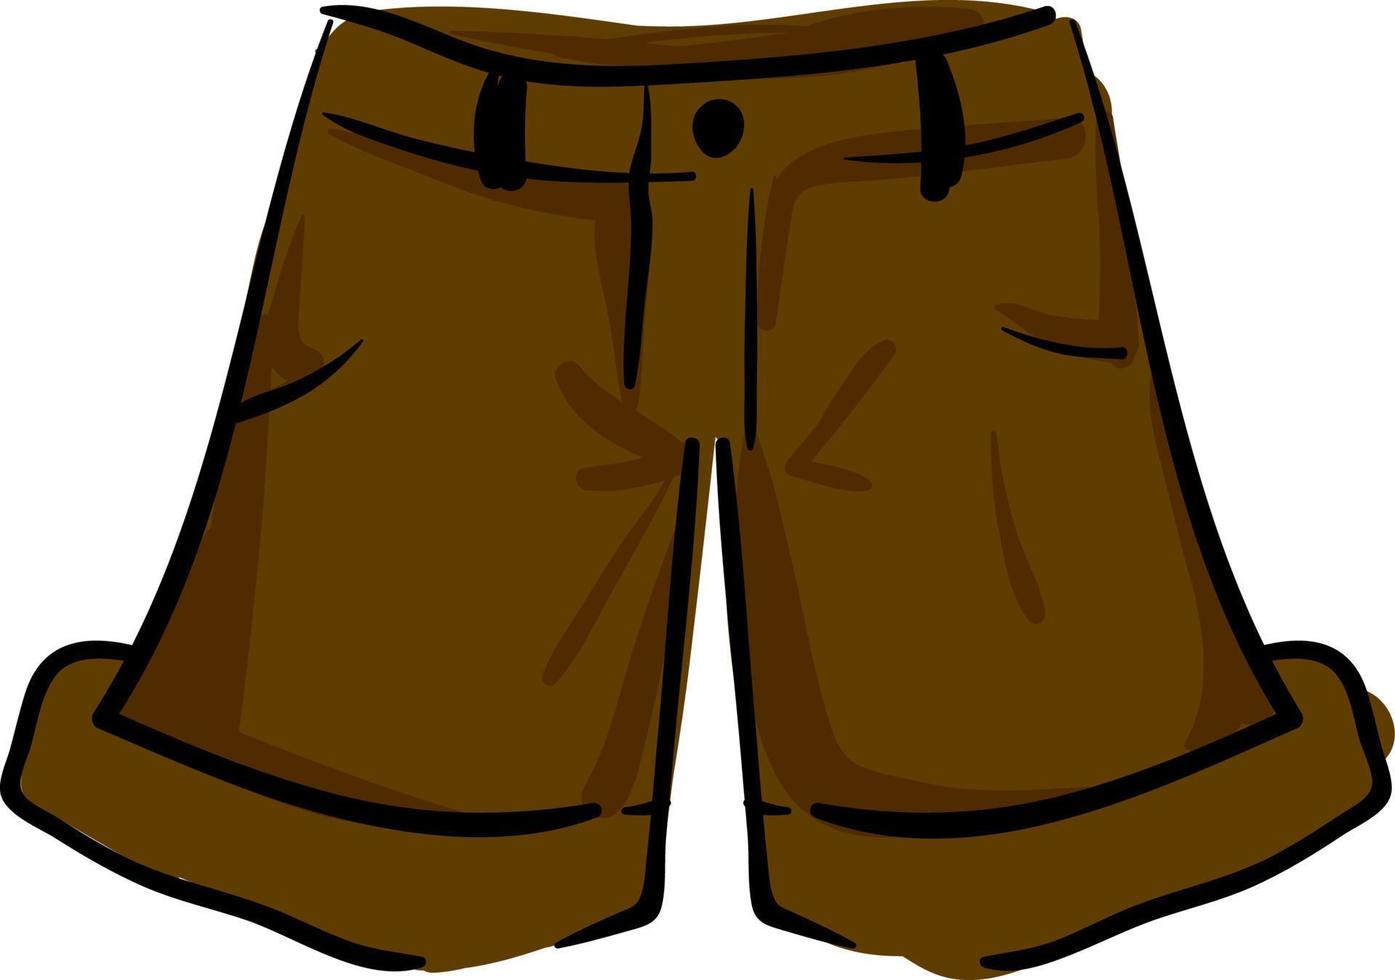 pantalones cortos de hombre marrón, ilustración, vector sobre fondo blanco.